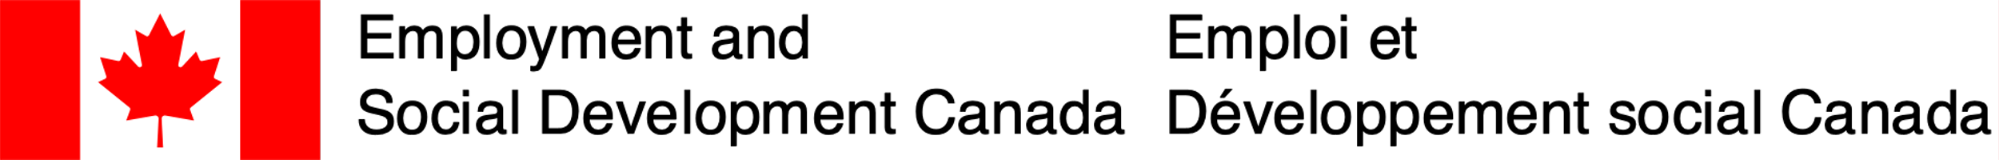 Logo Emploi et Développement social Canada